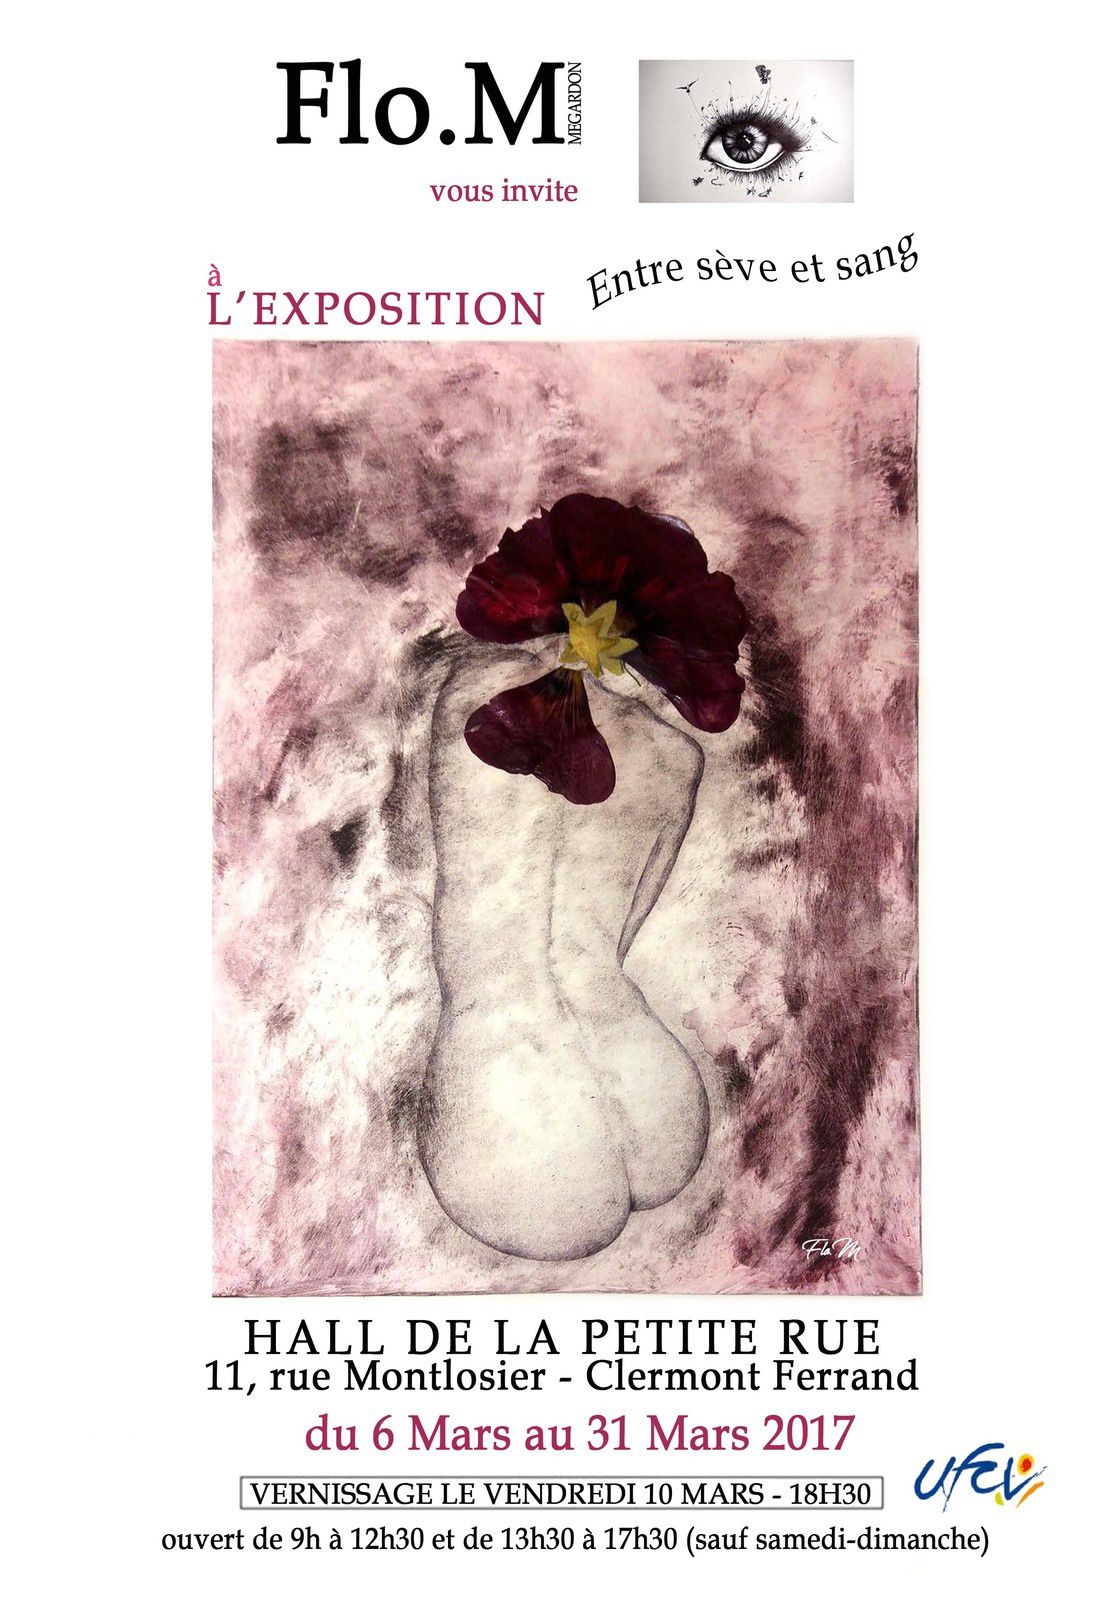 Exposition "Entre sève et sang" de Flo.M à la Galerie du Hall de la Petite Rue - 11 rue Montlosier Clermont Ferrand